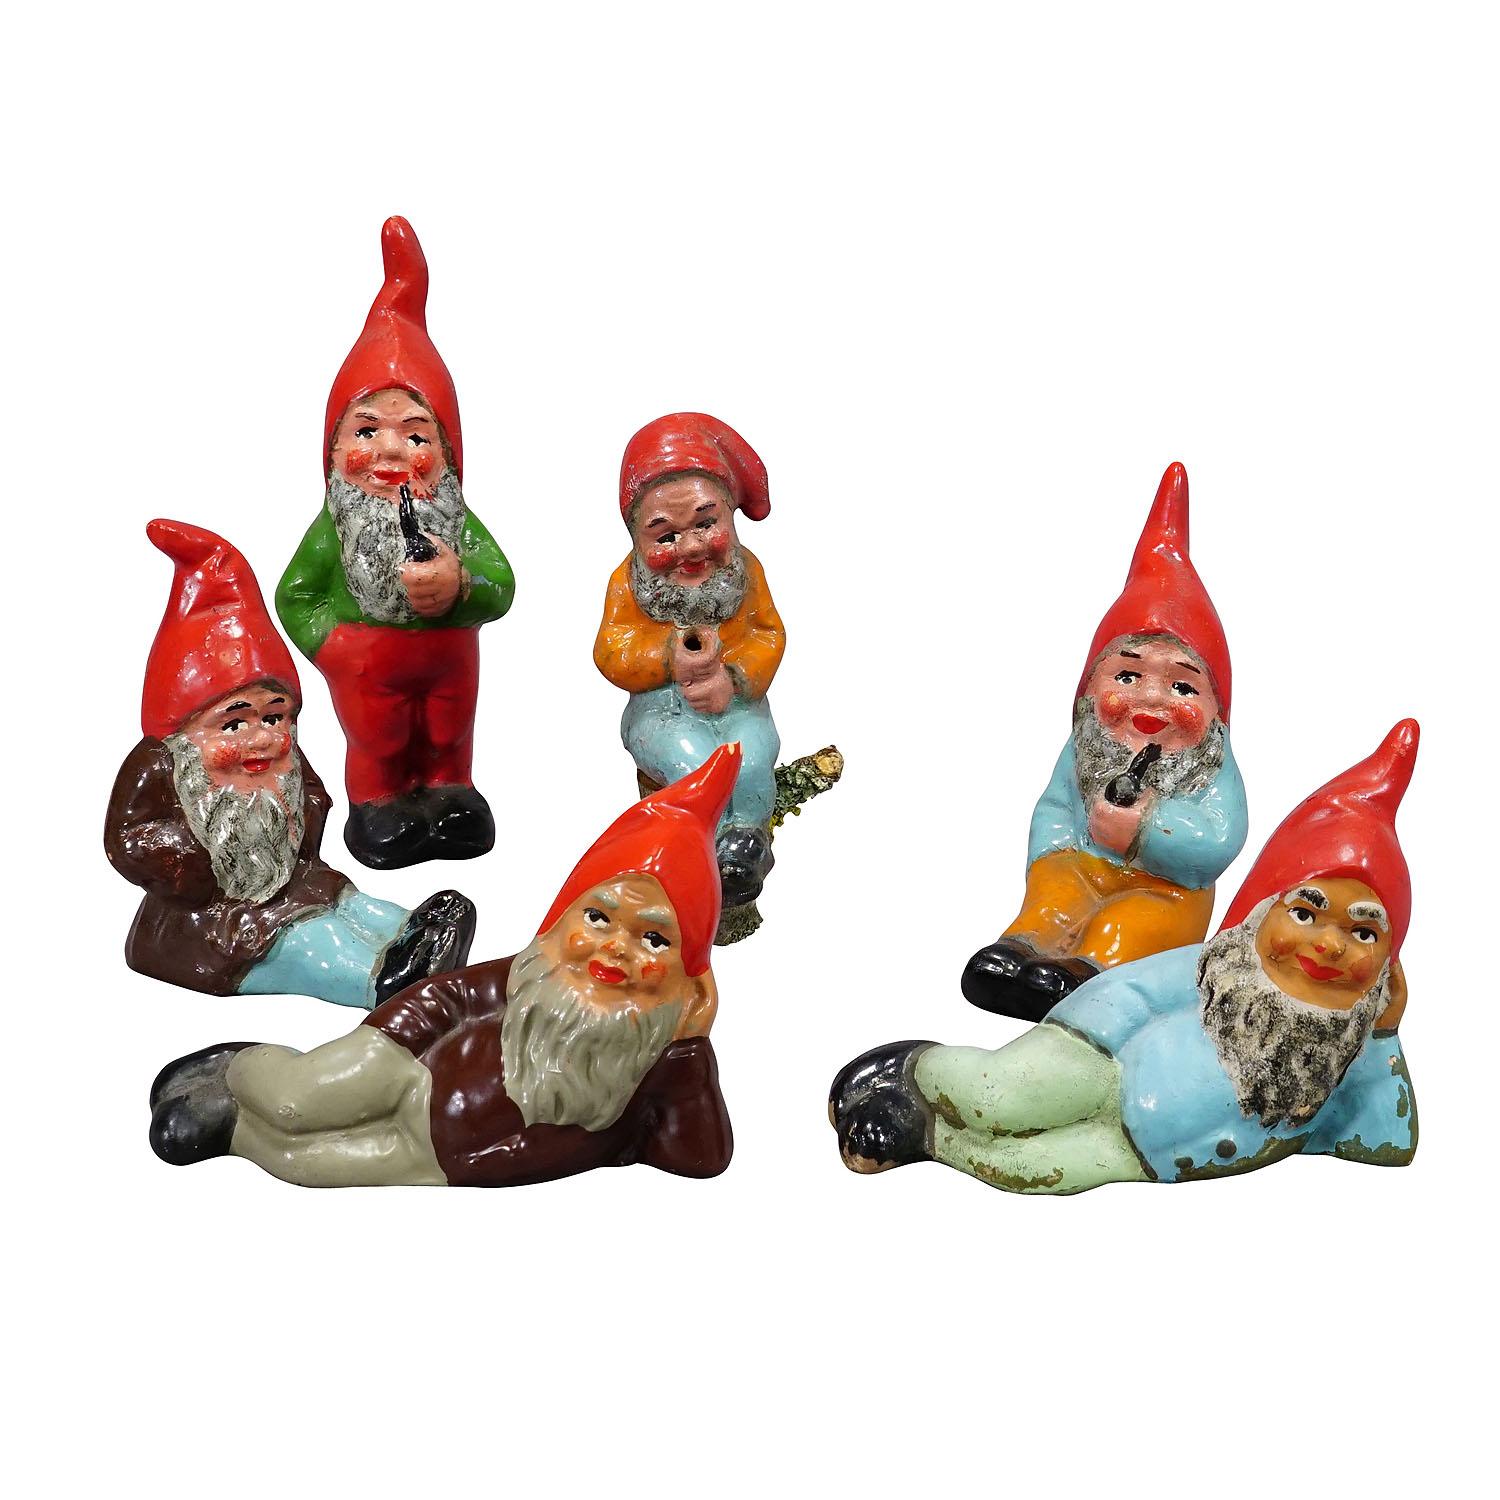 Lot of Six Tiny Terrakotta-Garten Gnomes, Deutschland ca. 1950er Jahre

Ein skurriles Set von sechs kleinen Gartenzwergen, hergestellt in Deutschland ca. 1950er Jahre, wahrscheinlich von Heissner. Sie sind aus Terrakotta gefertigt und von Hand mit